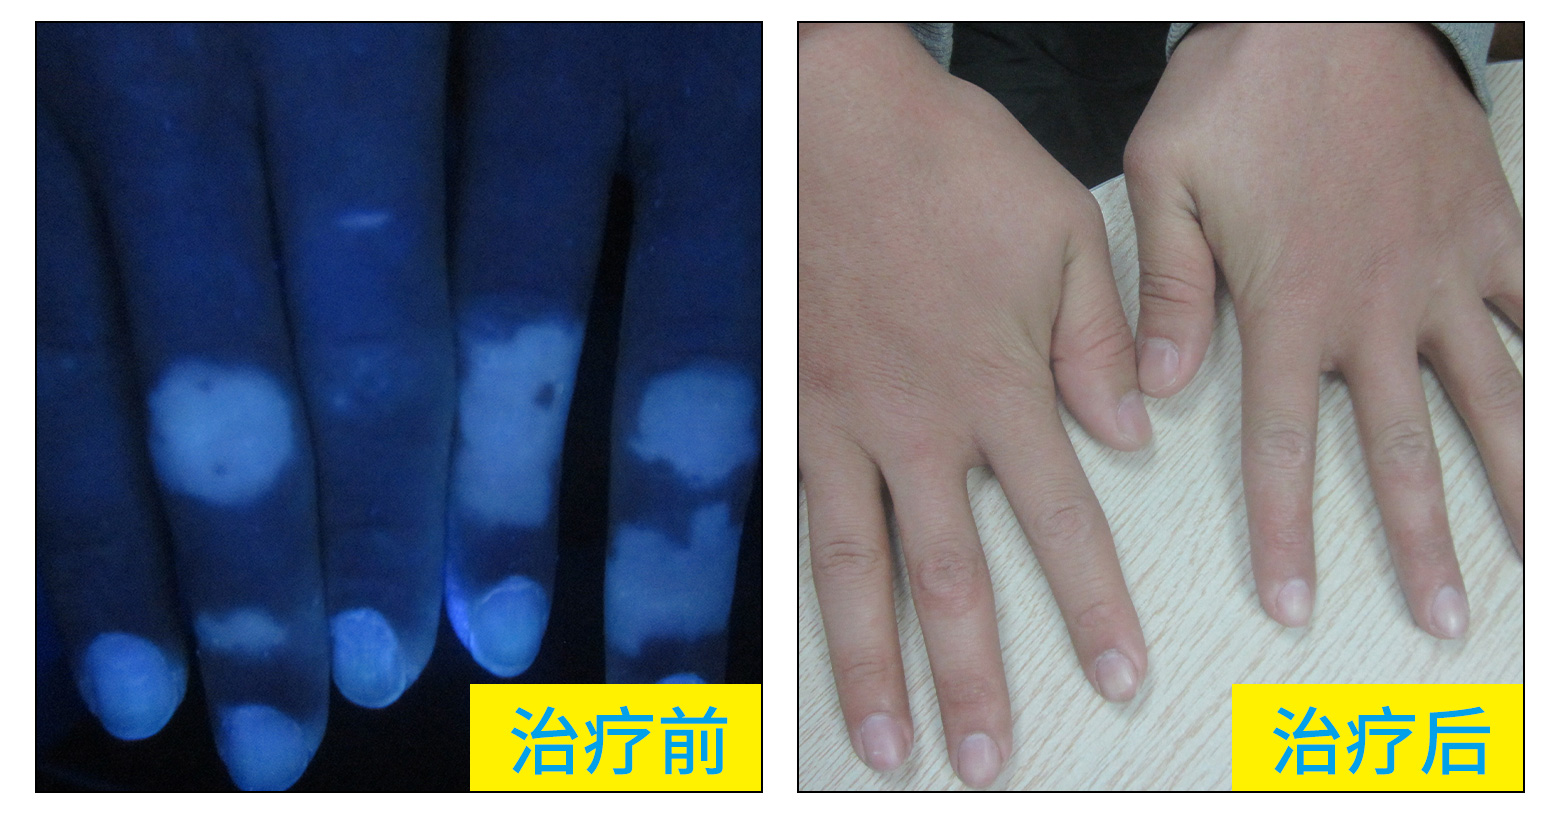 18岁高中生双手关节处白斑两年了近期有扩大了